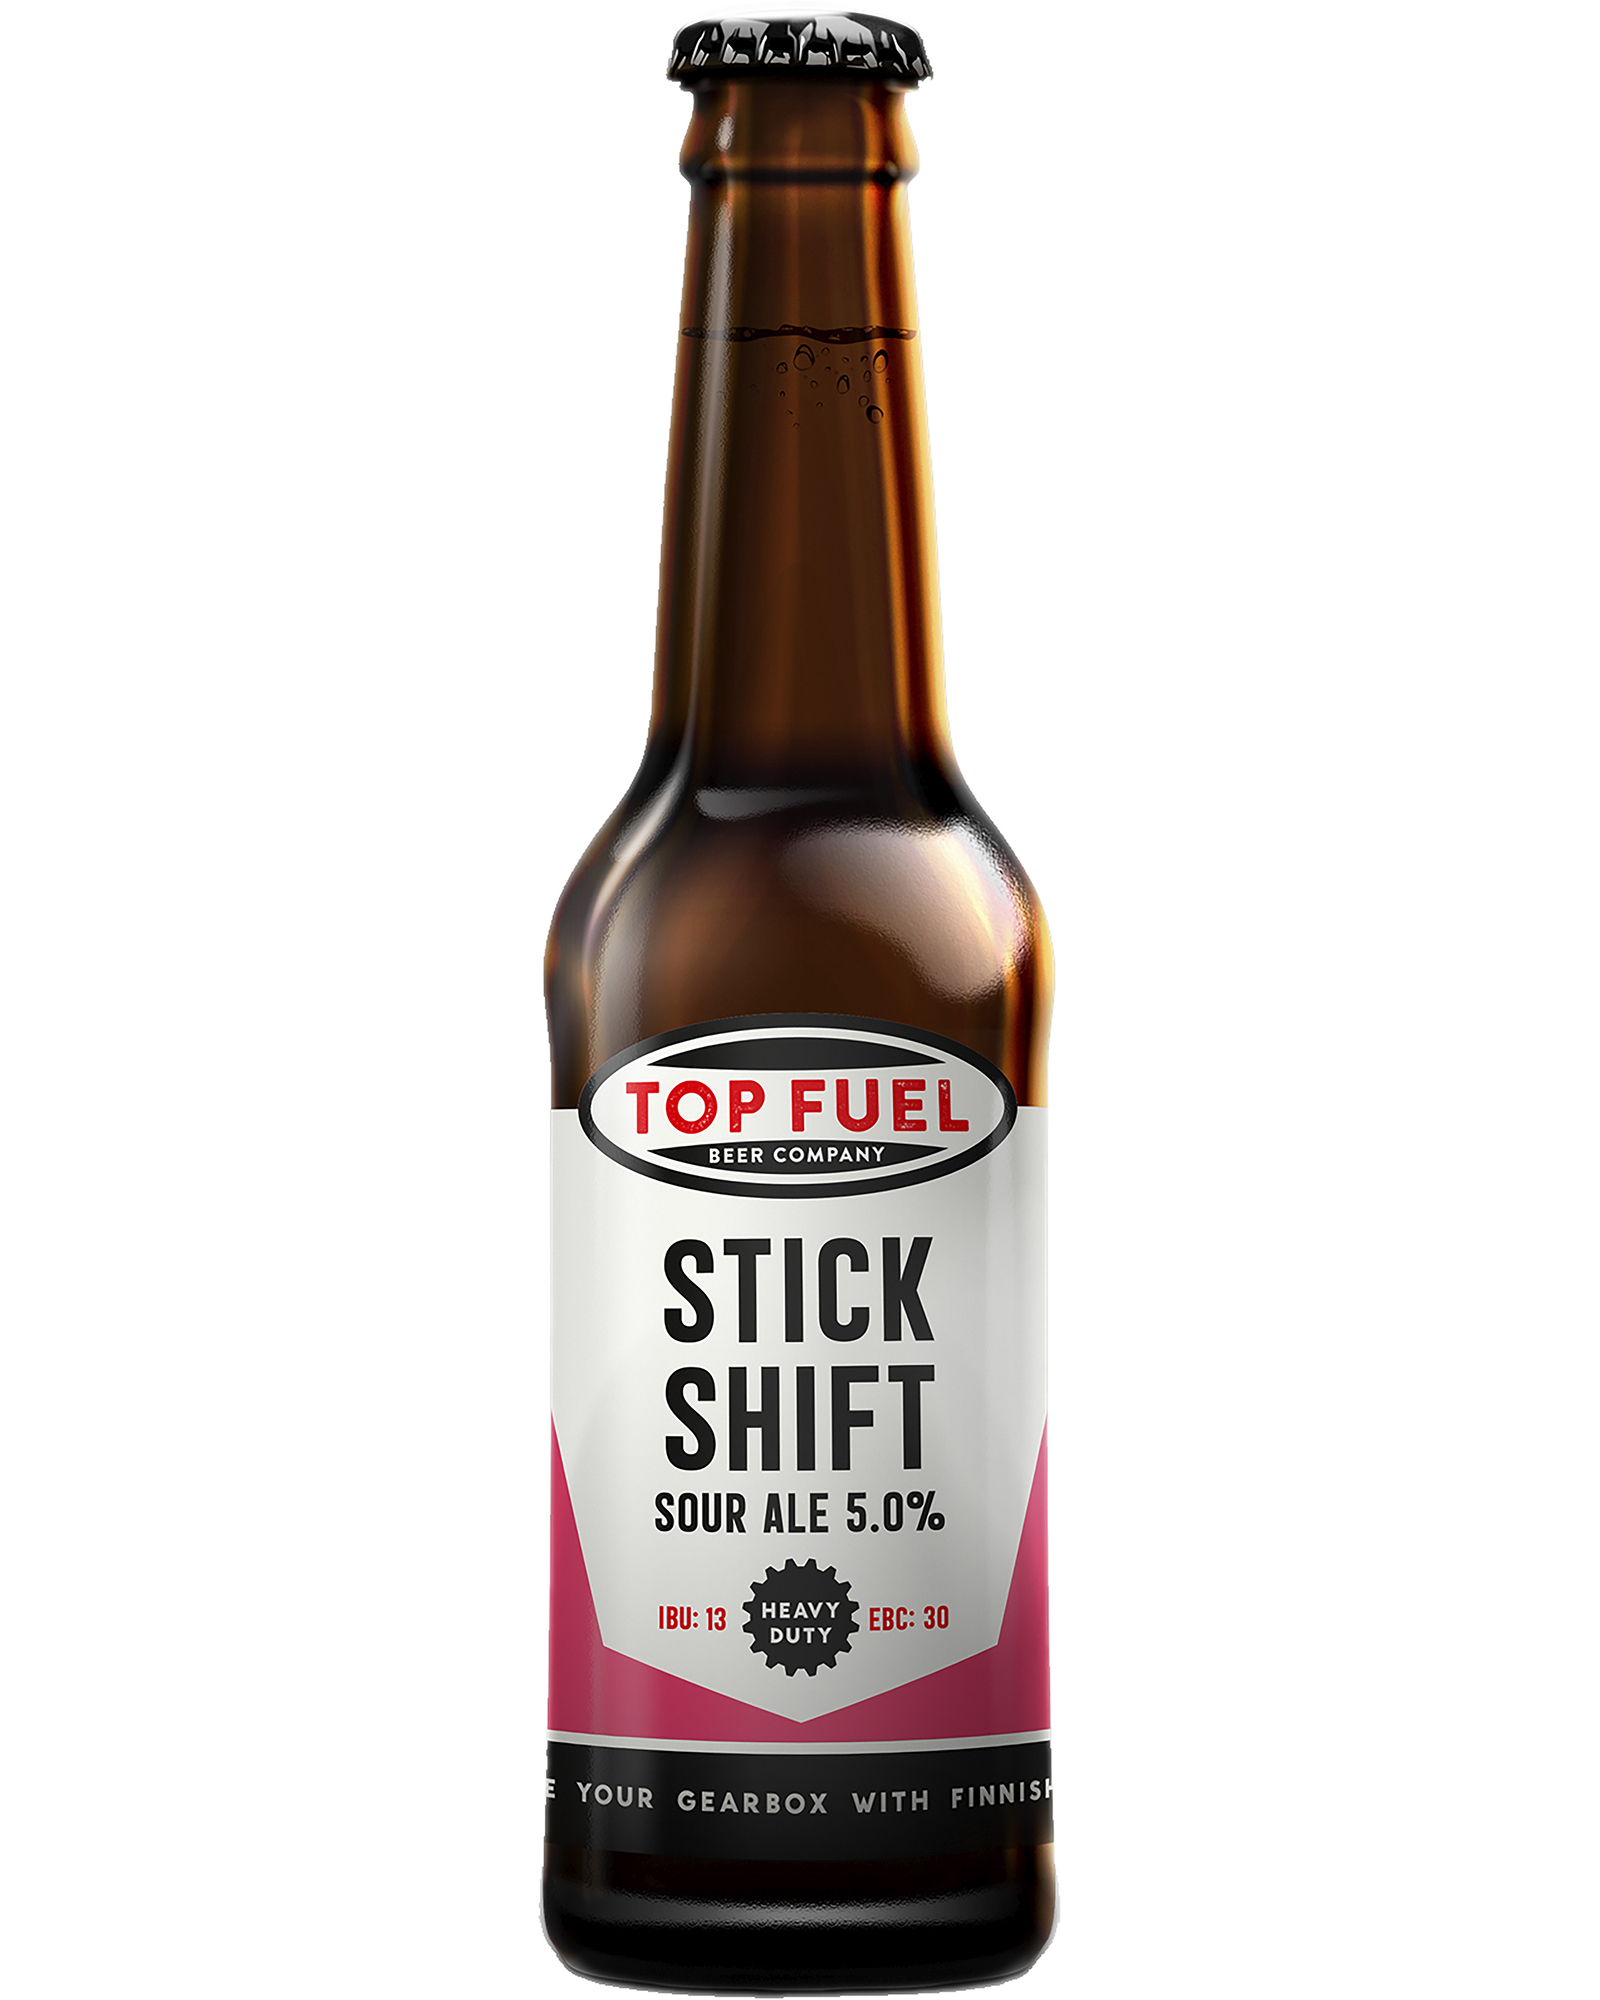 Top Fuel Stick Shift Sour Ale